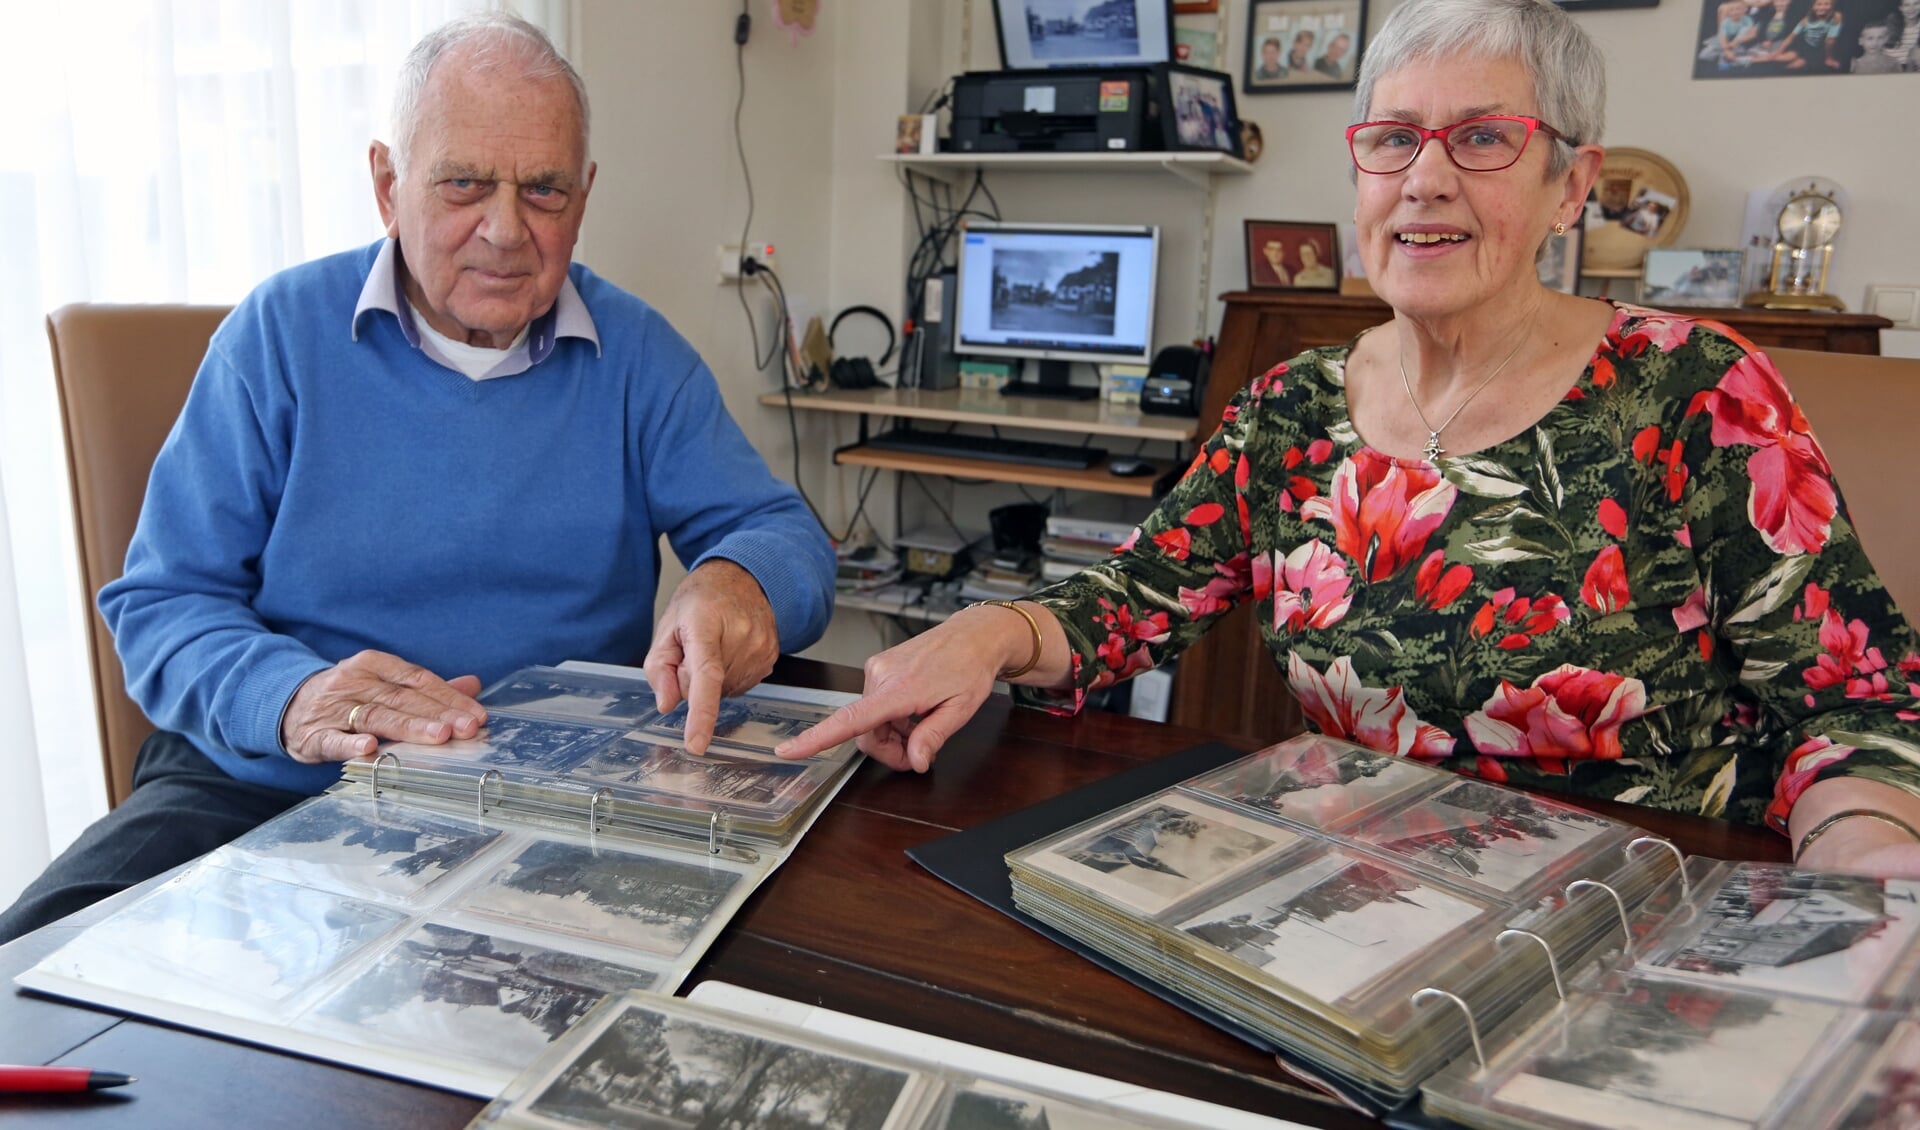 Nelleke en haar broer Kees hebben samen heel wat uren doorgebracht om de ansichtkaarten te scannen voor het plakboek.